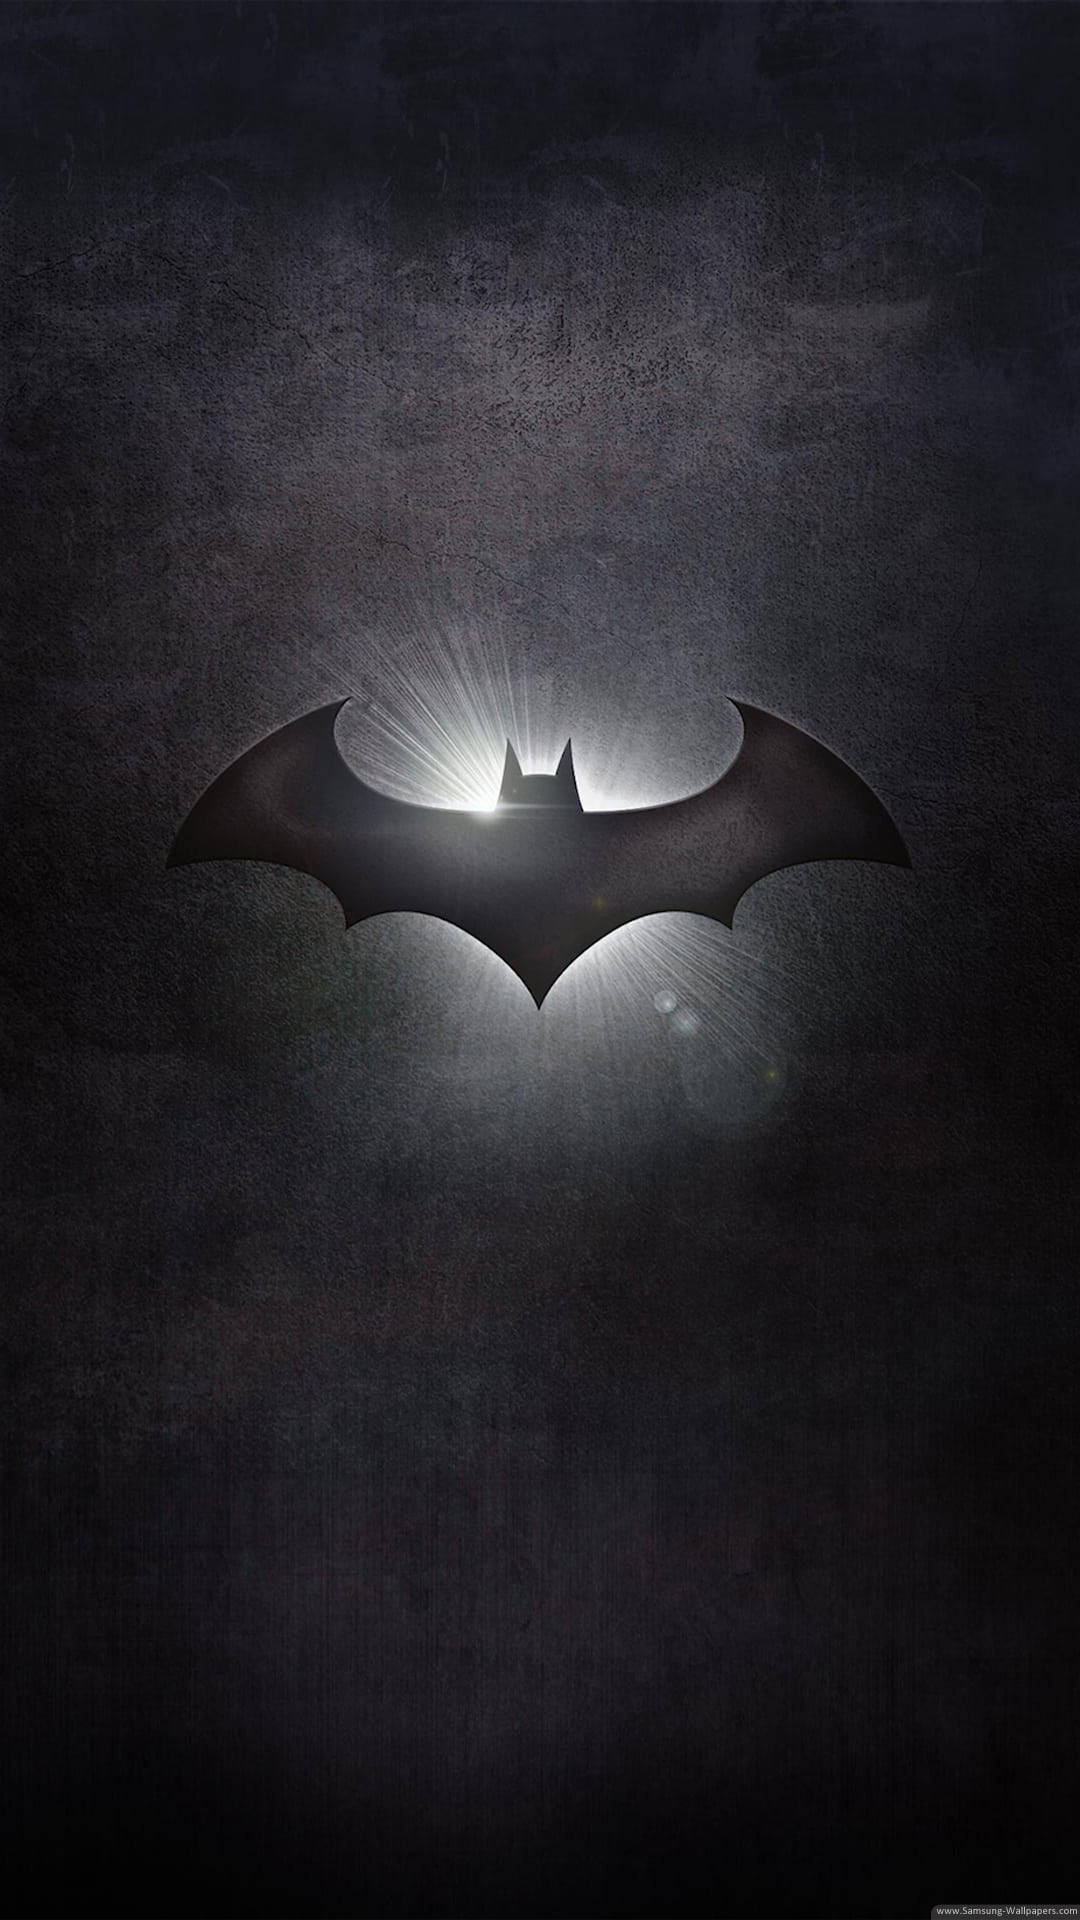 The Batman Logo Lightup IPhone Wallpaper  IPhone Wallpapers  iPhone  Wallpapers